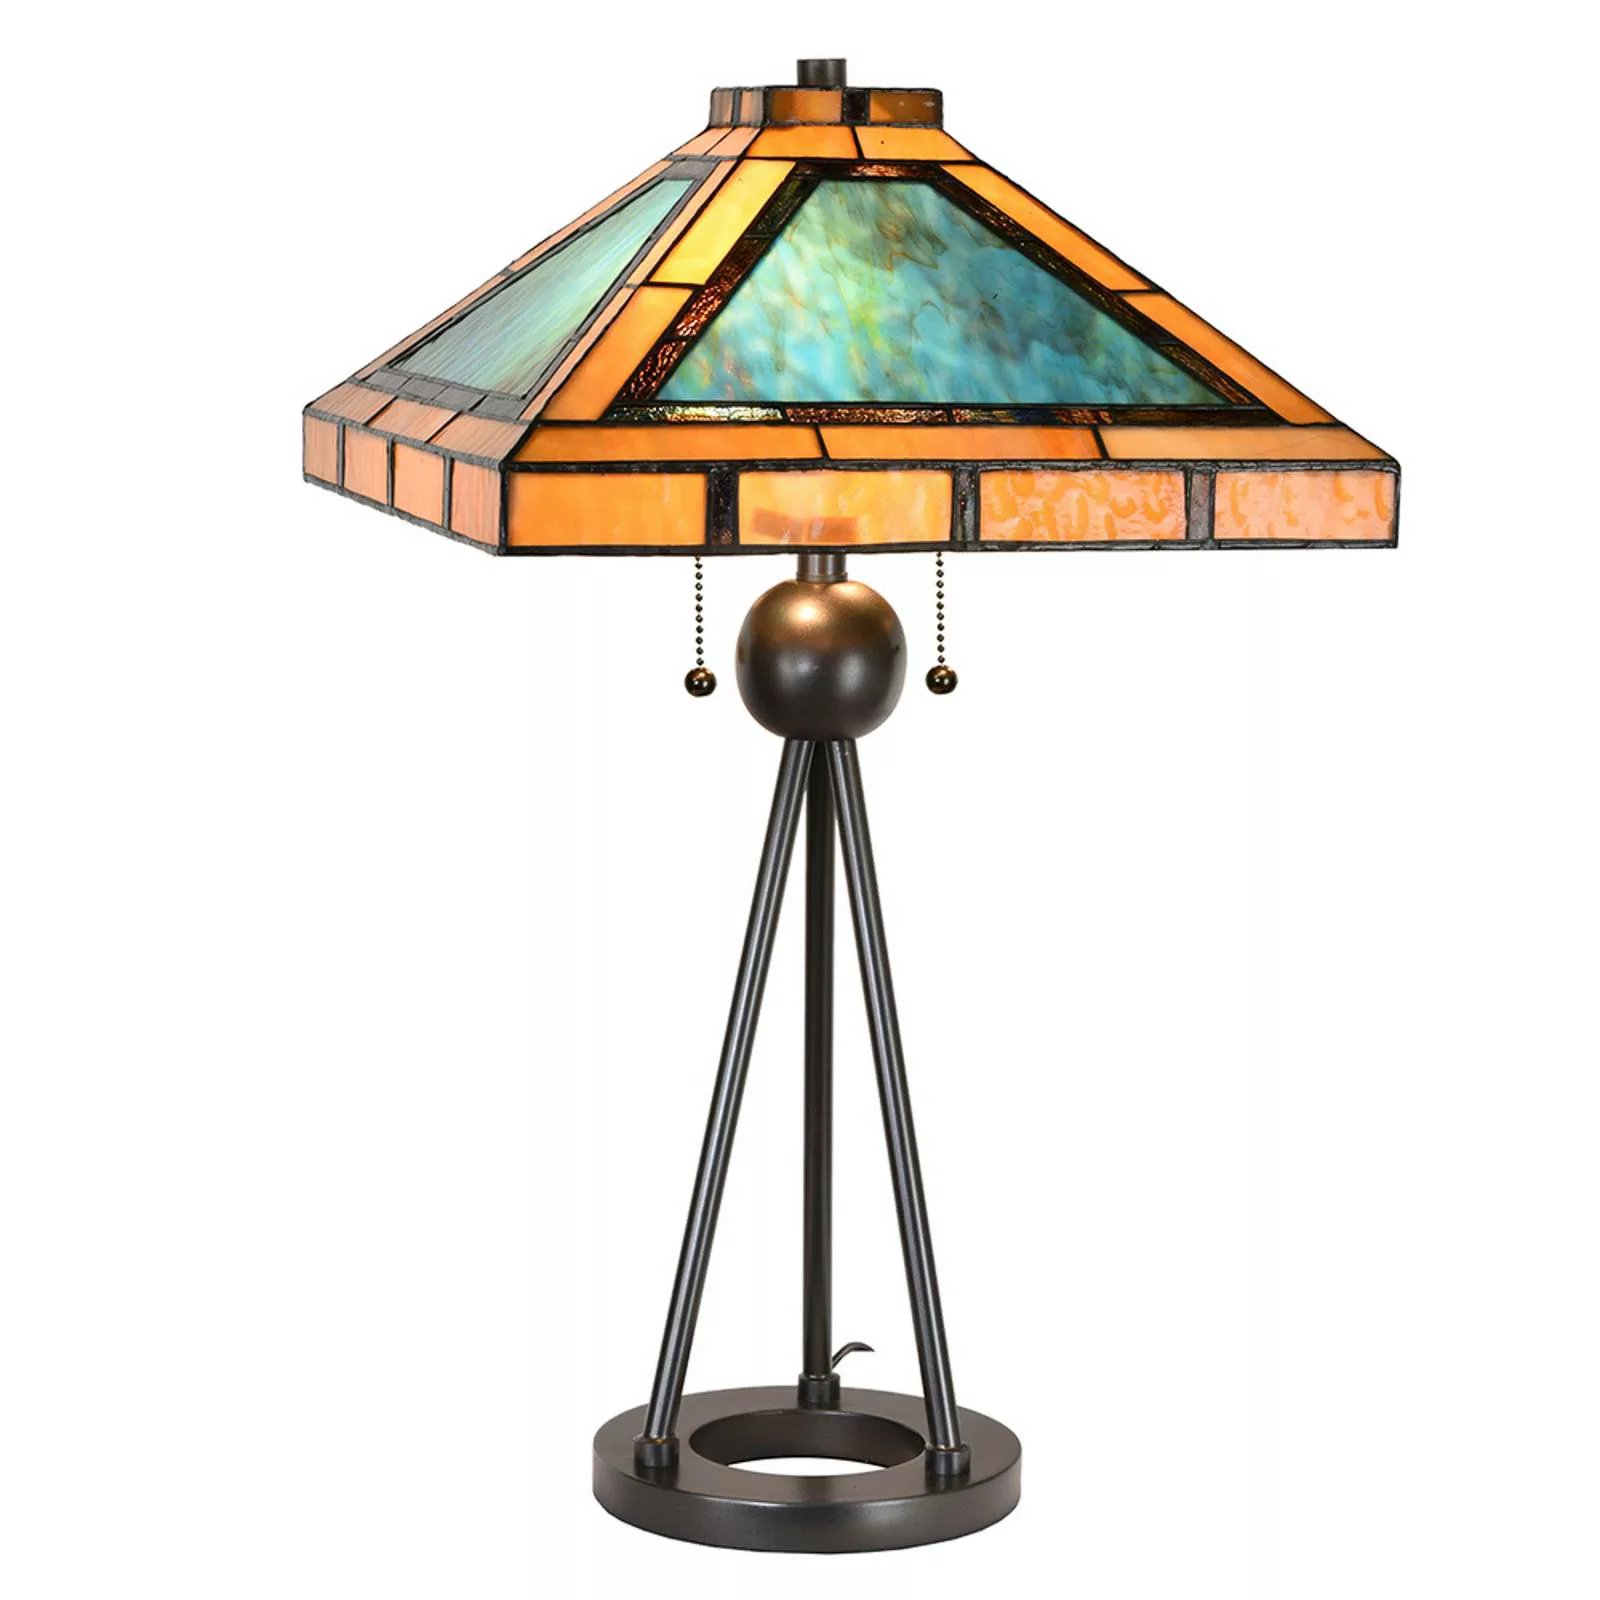 Tischlampe 5LL-6164, Tiffany-Design grün/braun günstig online kaufen